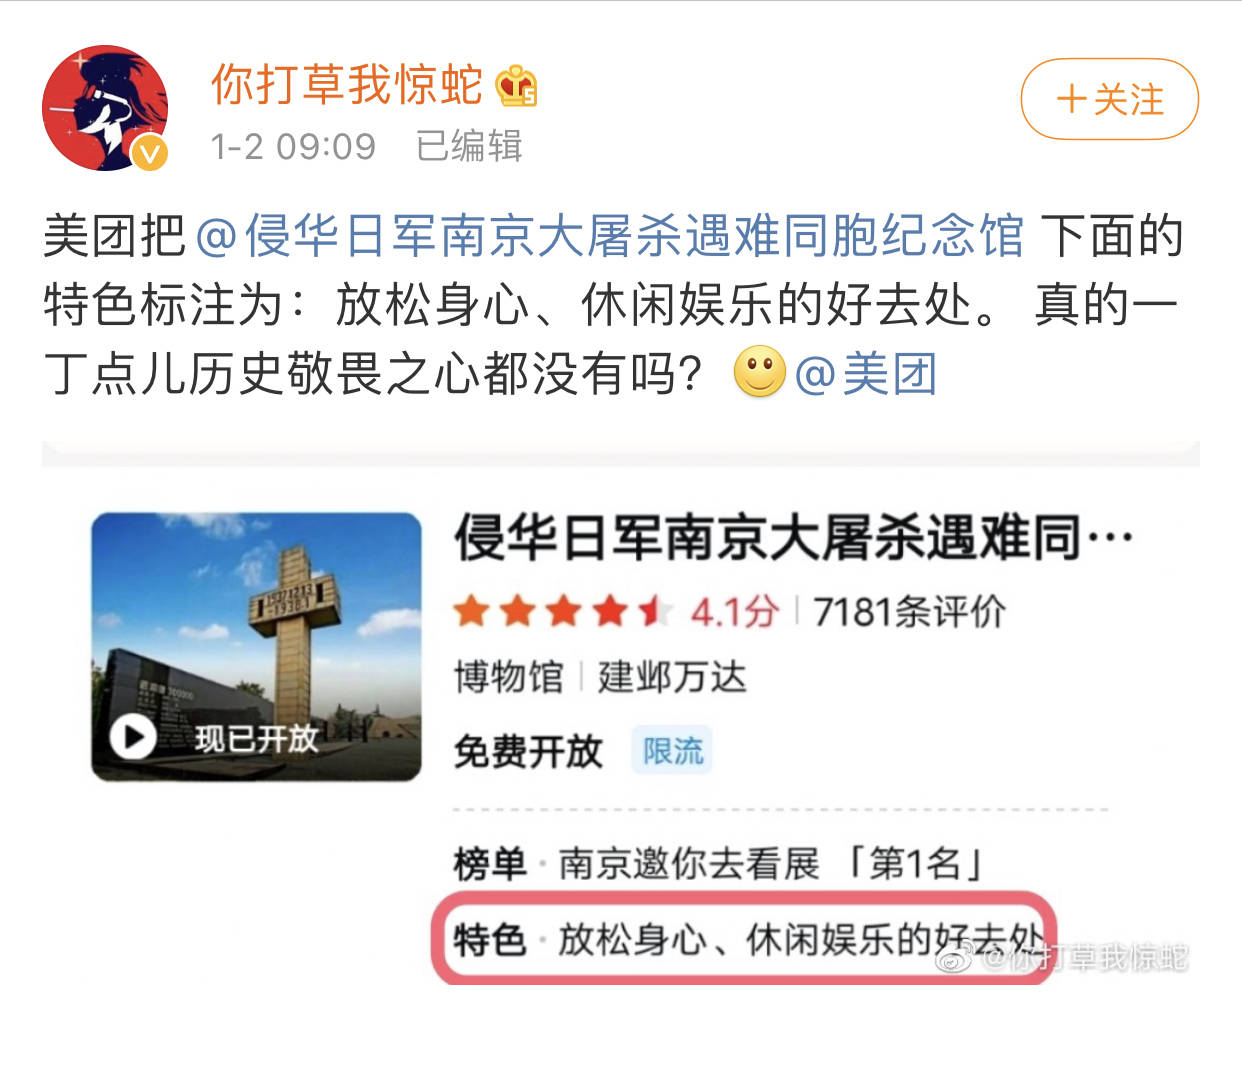 南京大屠杀遇难同胞纪念馆被贴娱乐标签 美团：道歉并改正